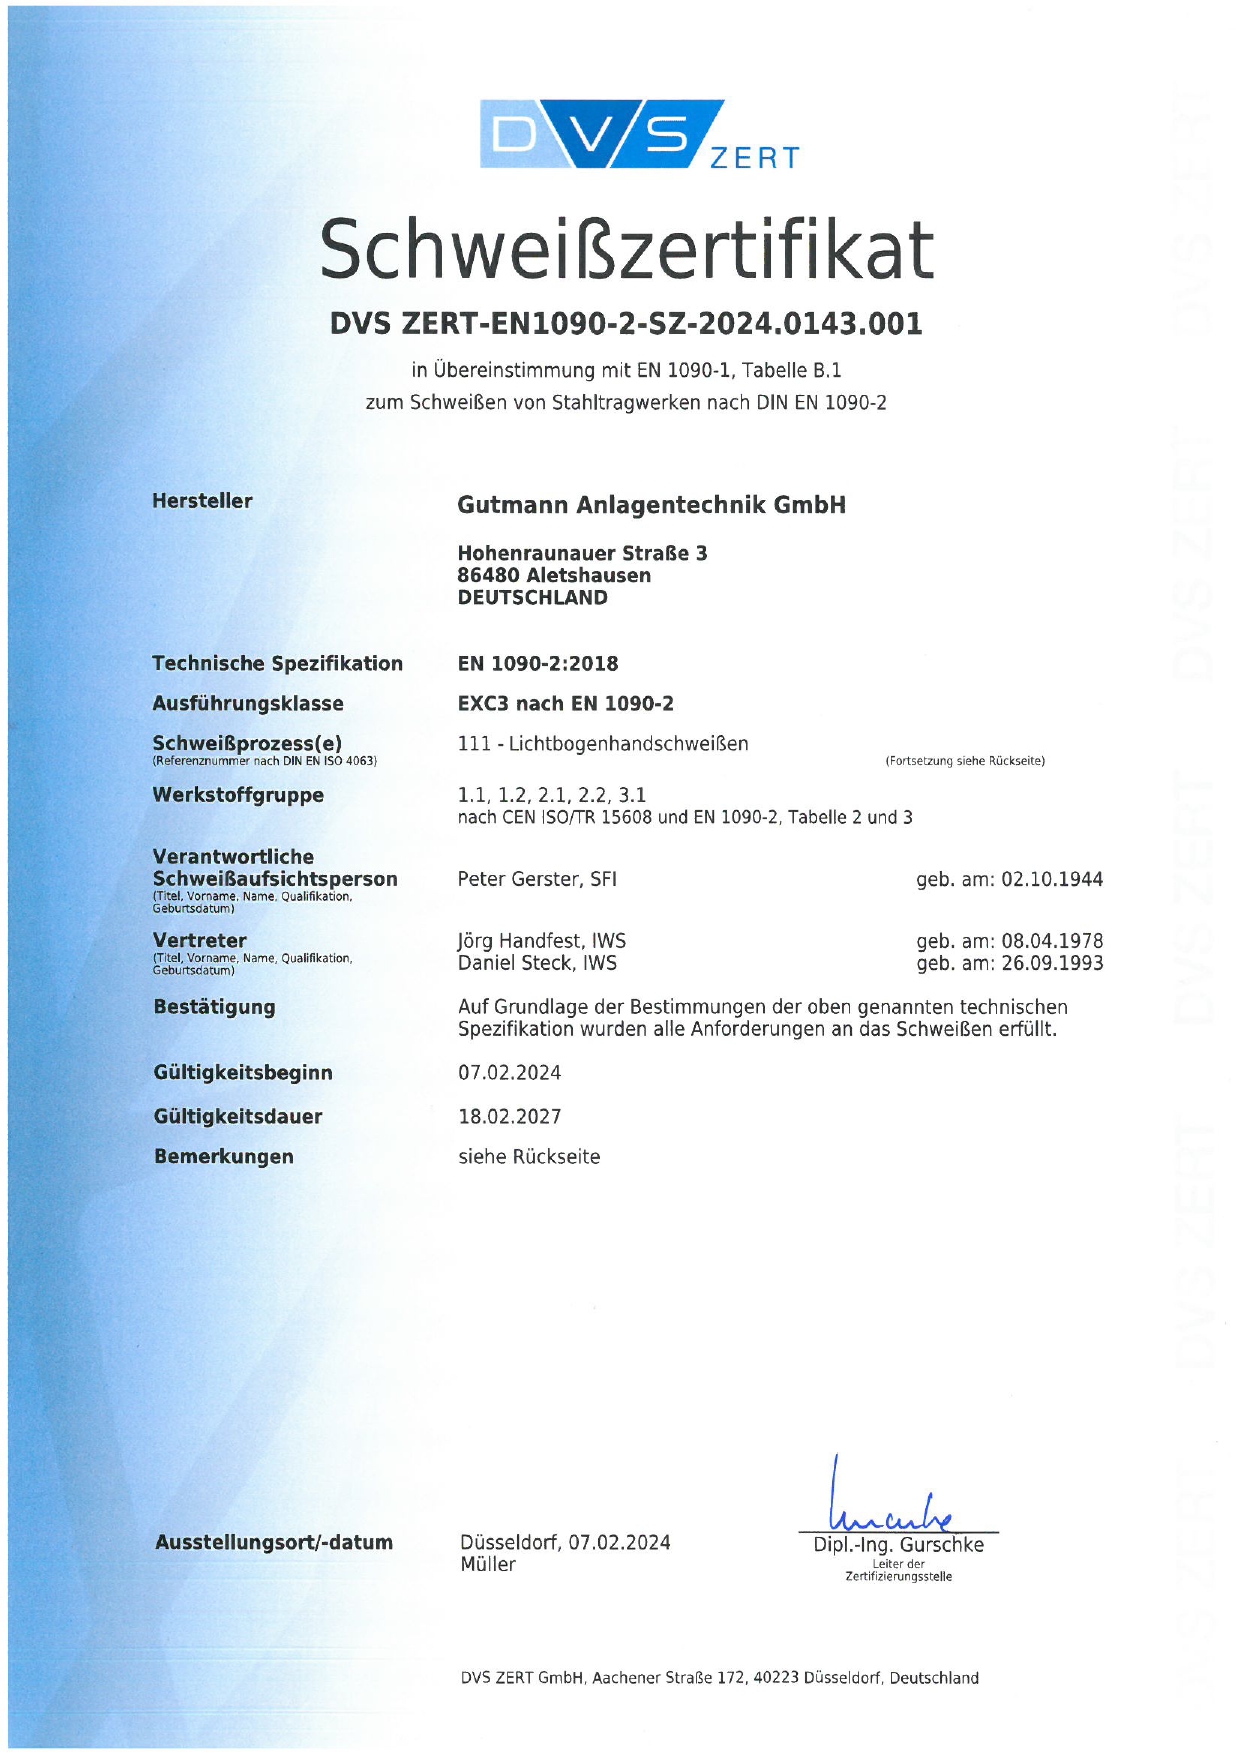 Gutmann Zertifikat EN 1090-1:2009+A1:2011